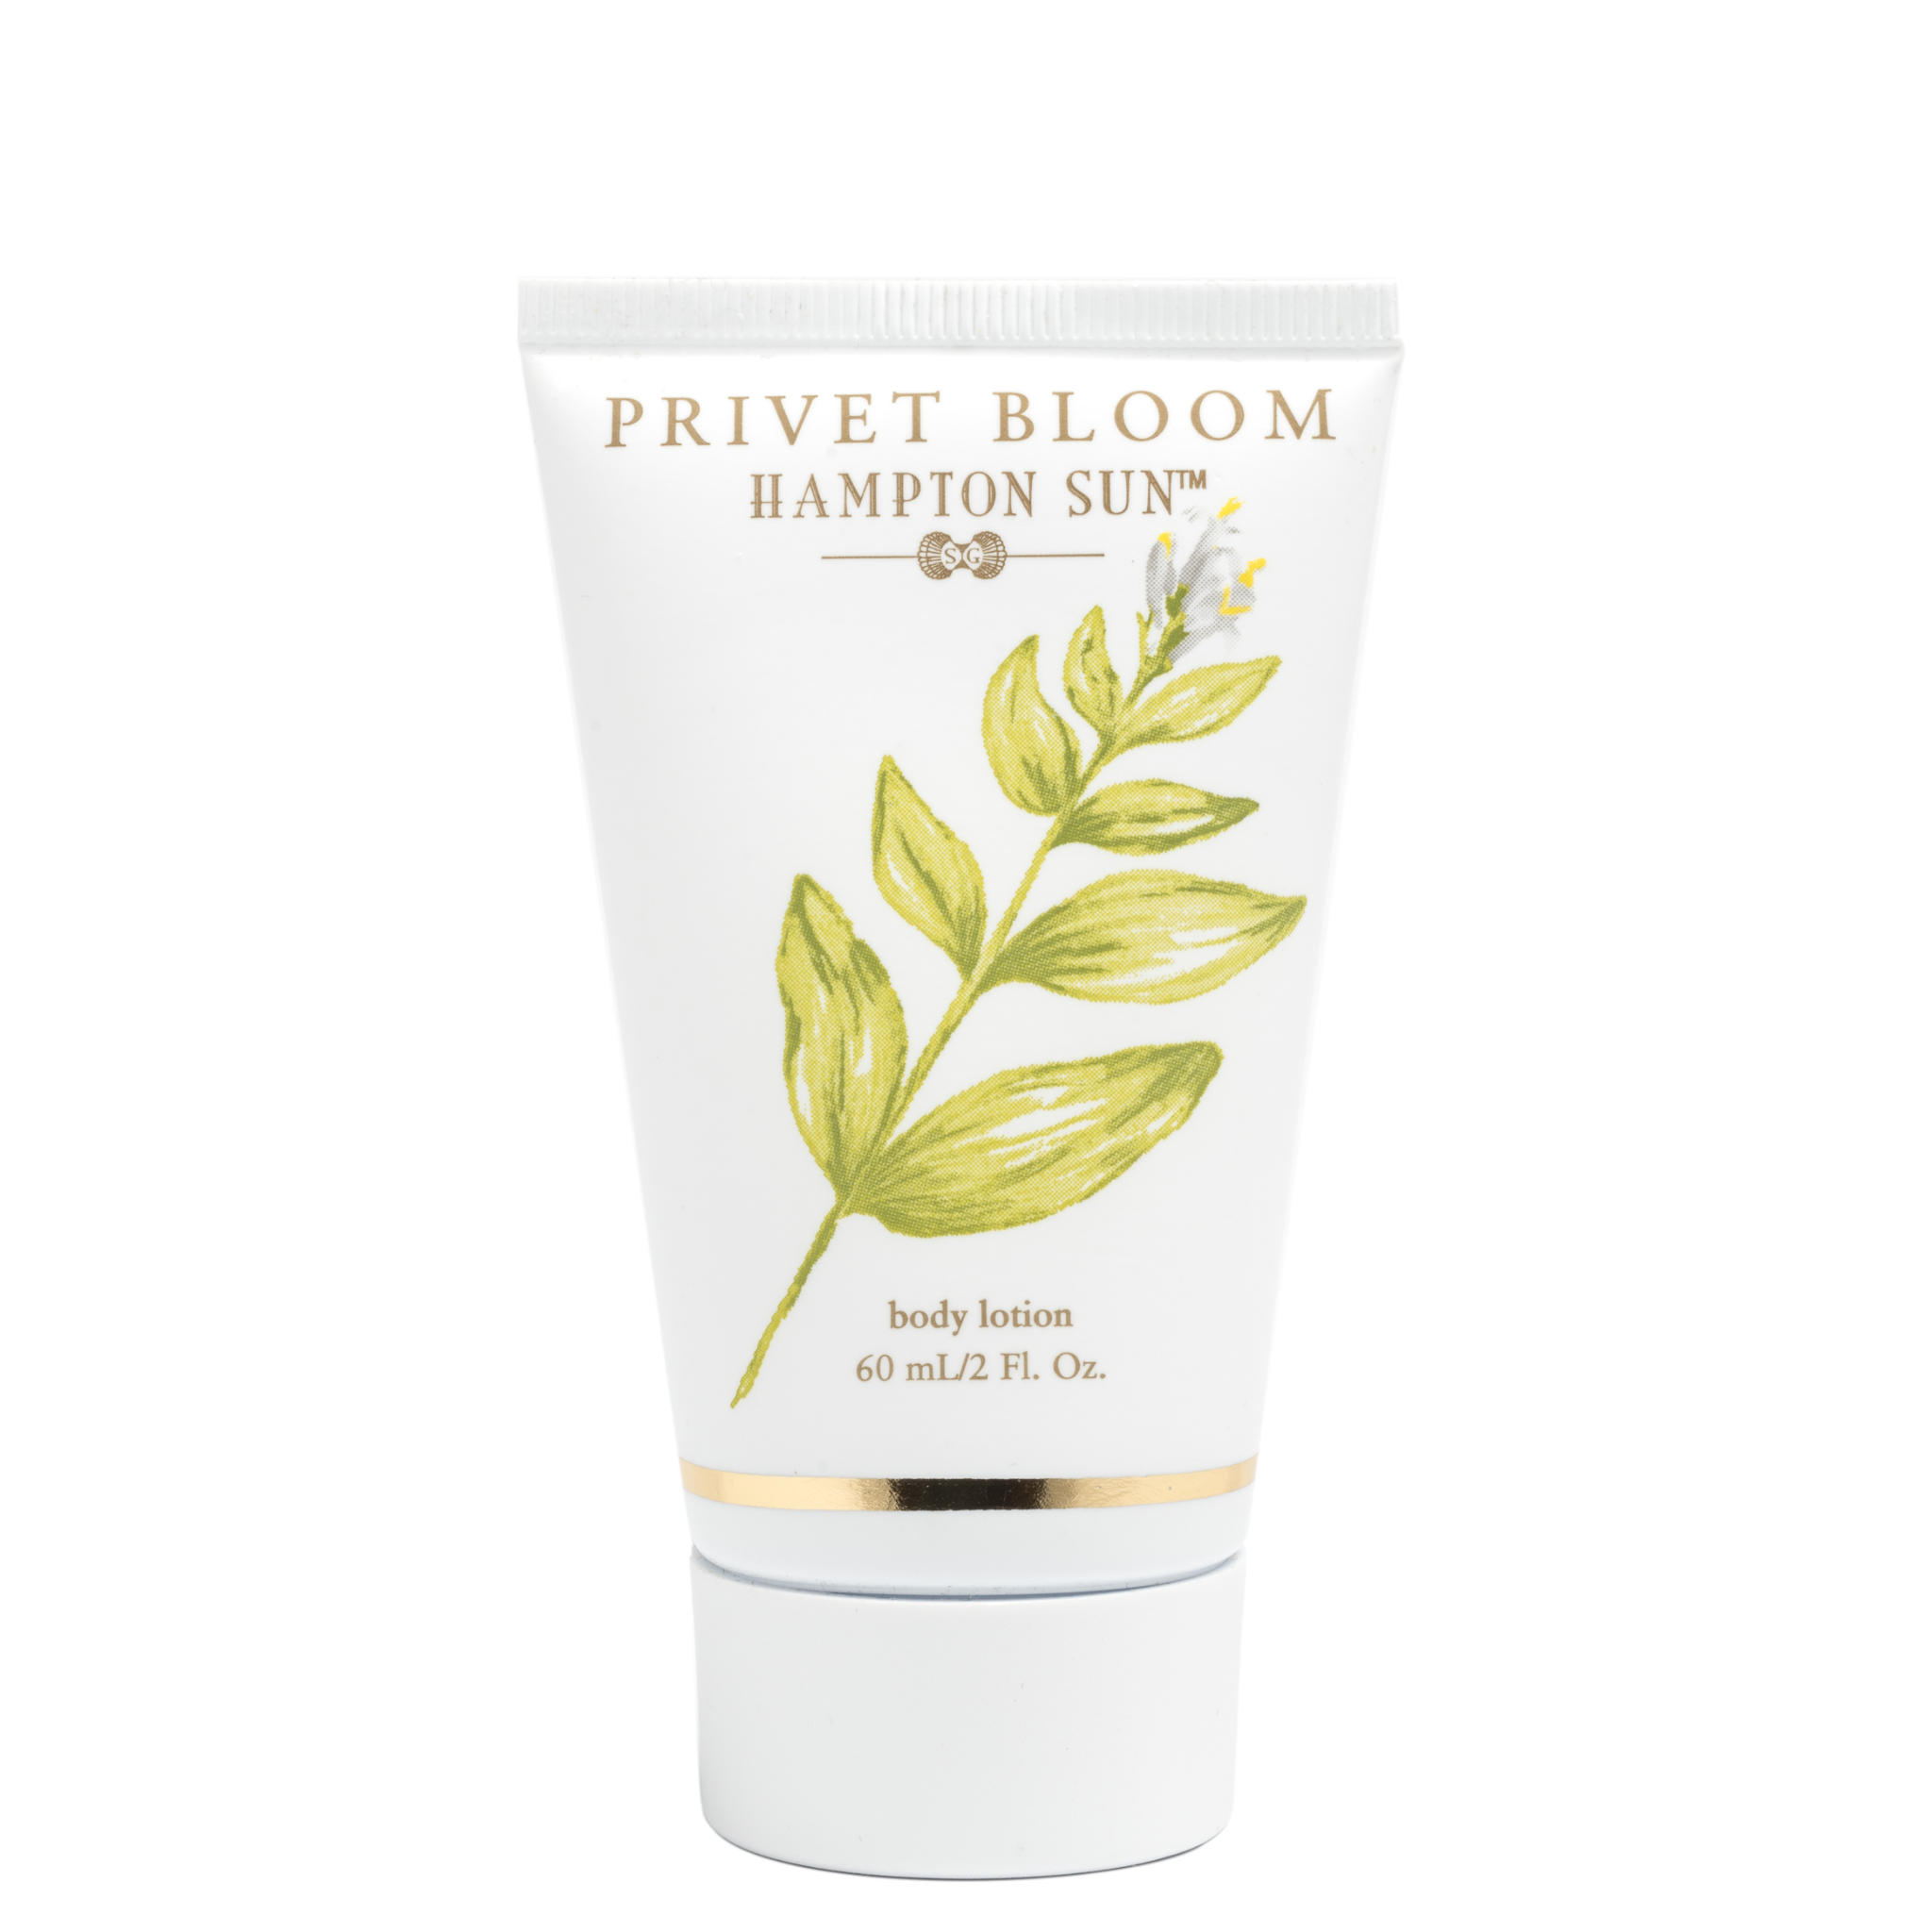 Privet Bloom Body Lotion - 2 oz.